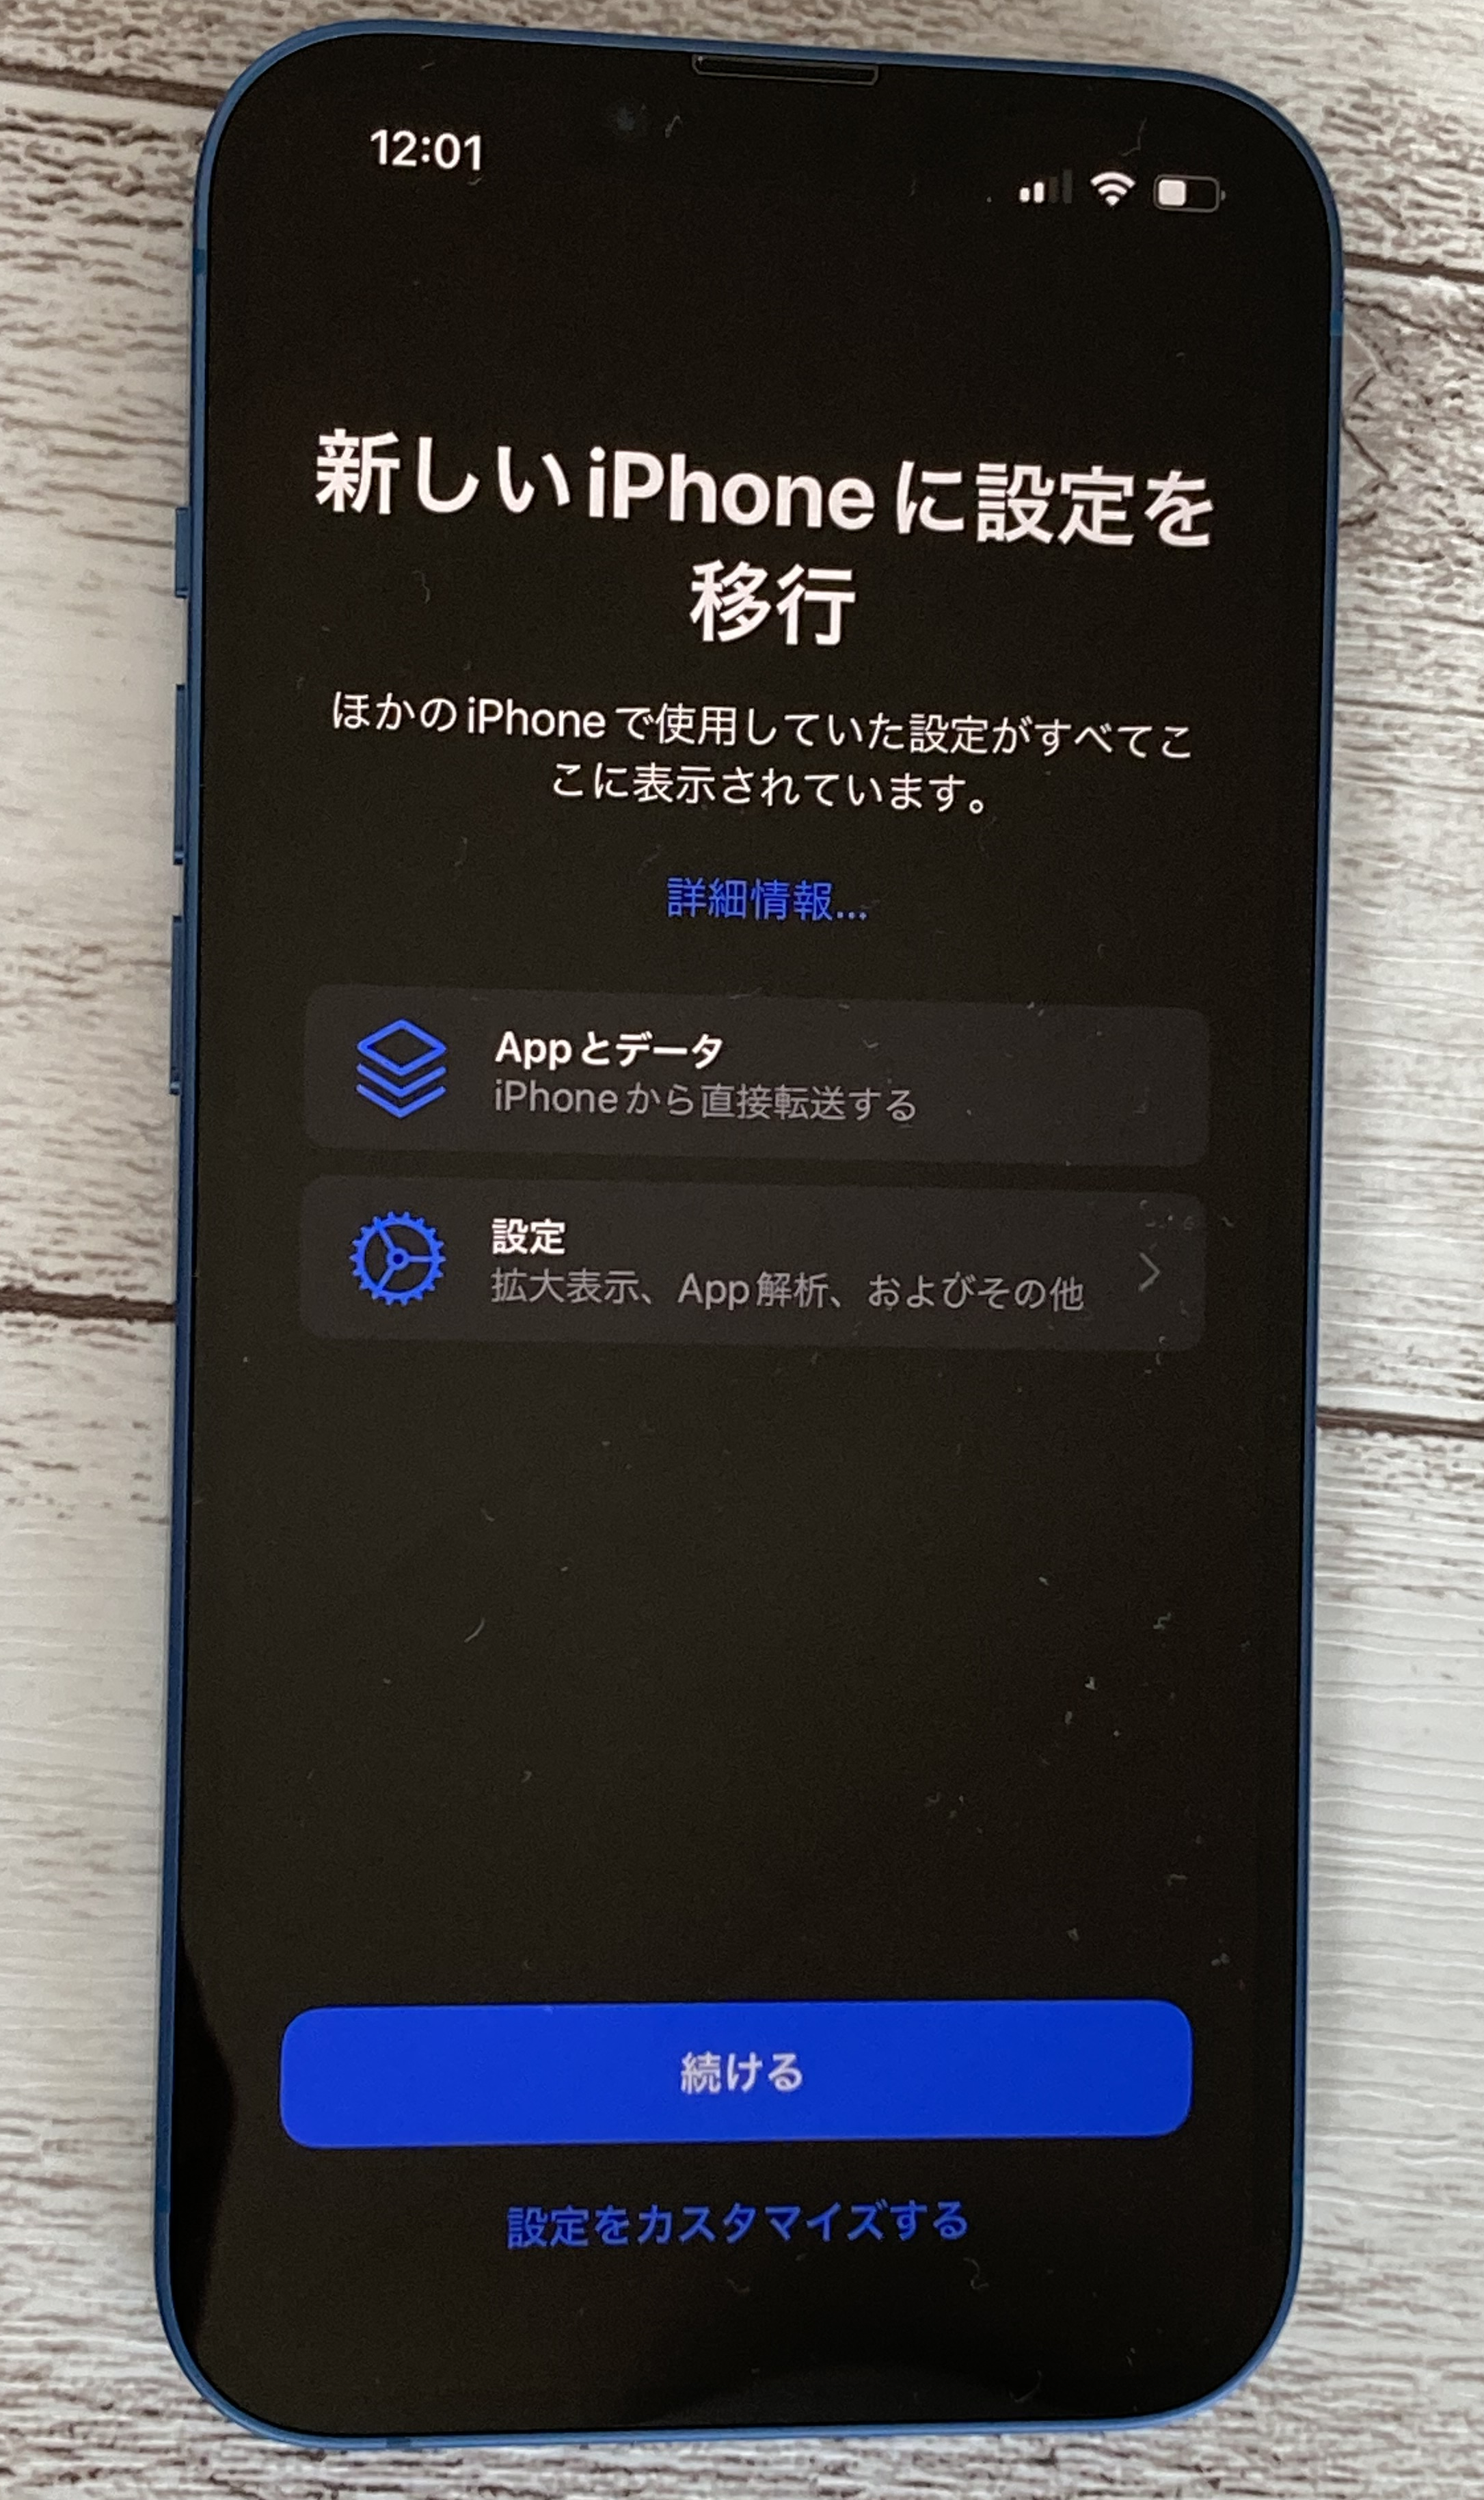 iphone-quickstart-newiphone-ikou